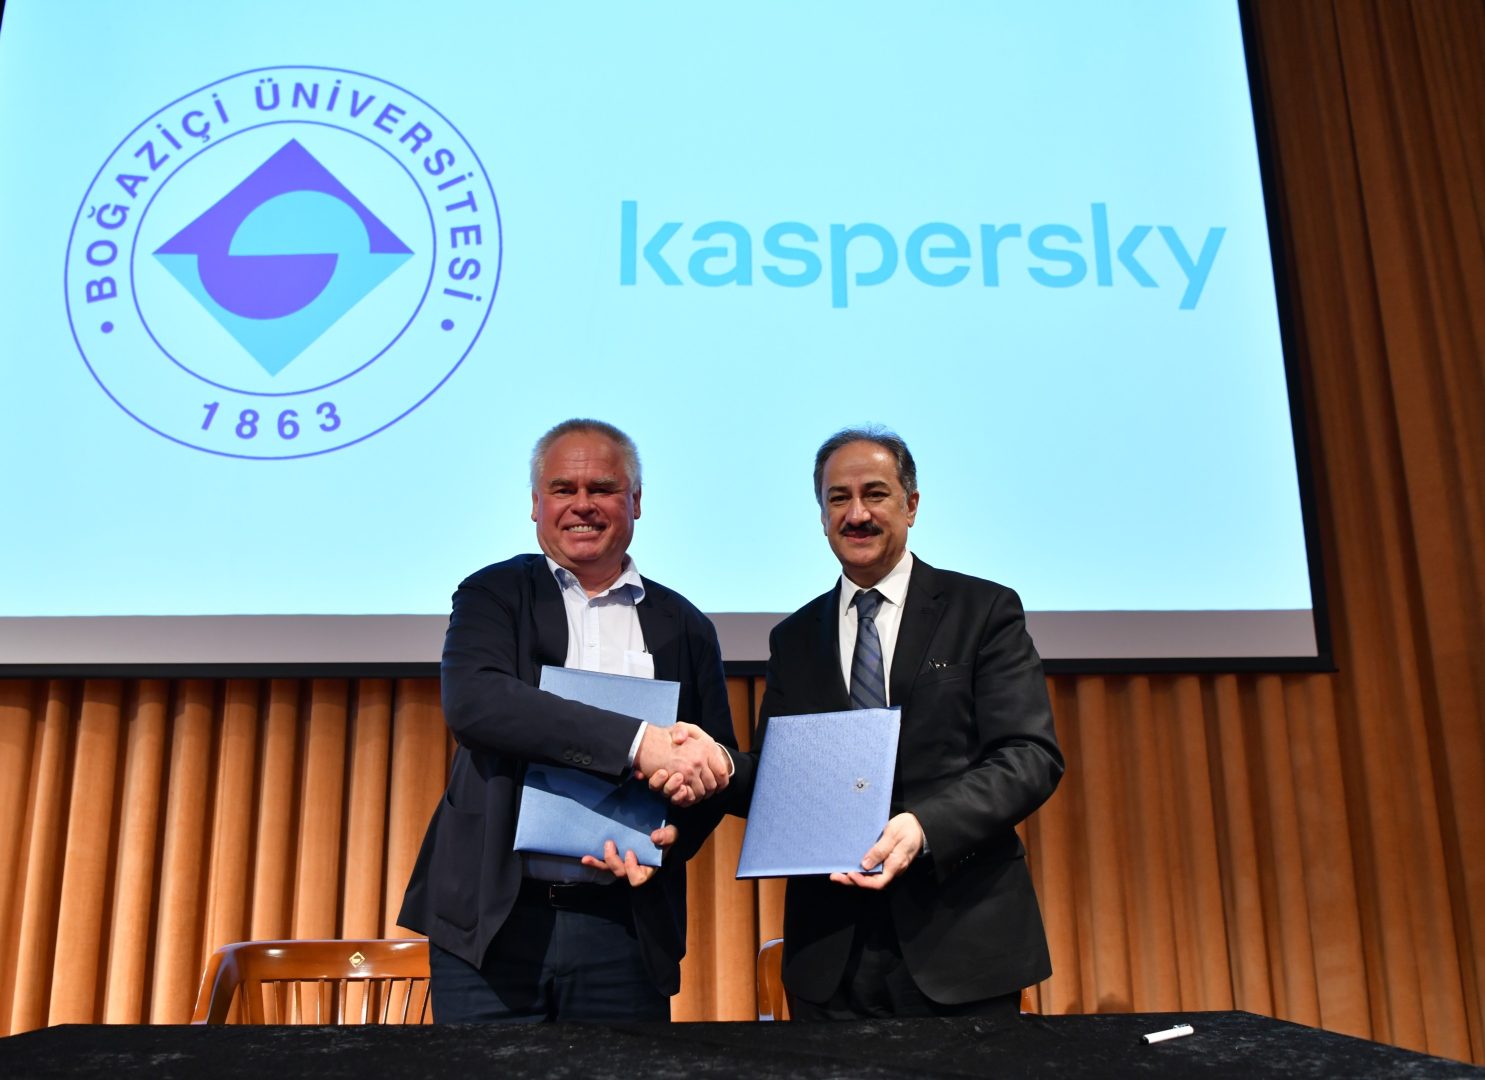 Kaspersky, İstanbul Şeffaflık Merkezi'ni Açtı ve Boğaziçi Üniversitesi ile Mutabakat Anlaşması İmzaladı